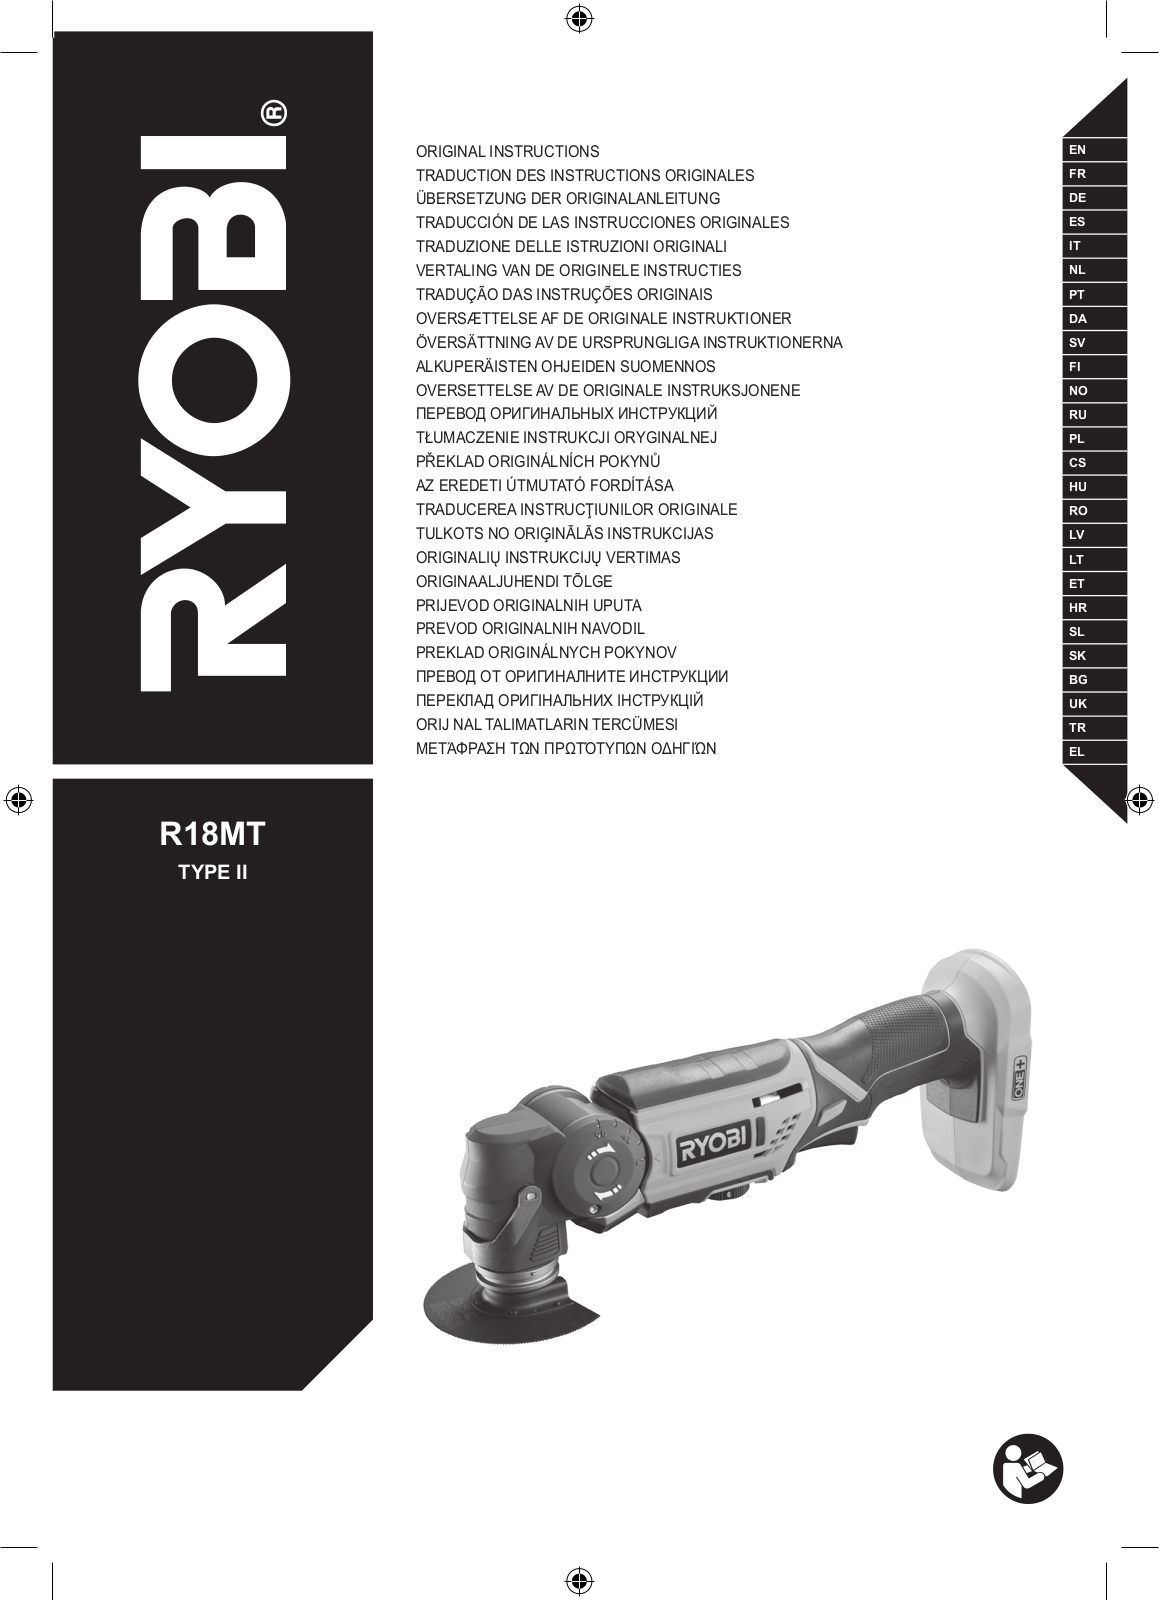 Ryobi R18MT TYPE II User Manual